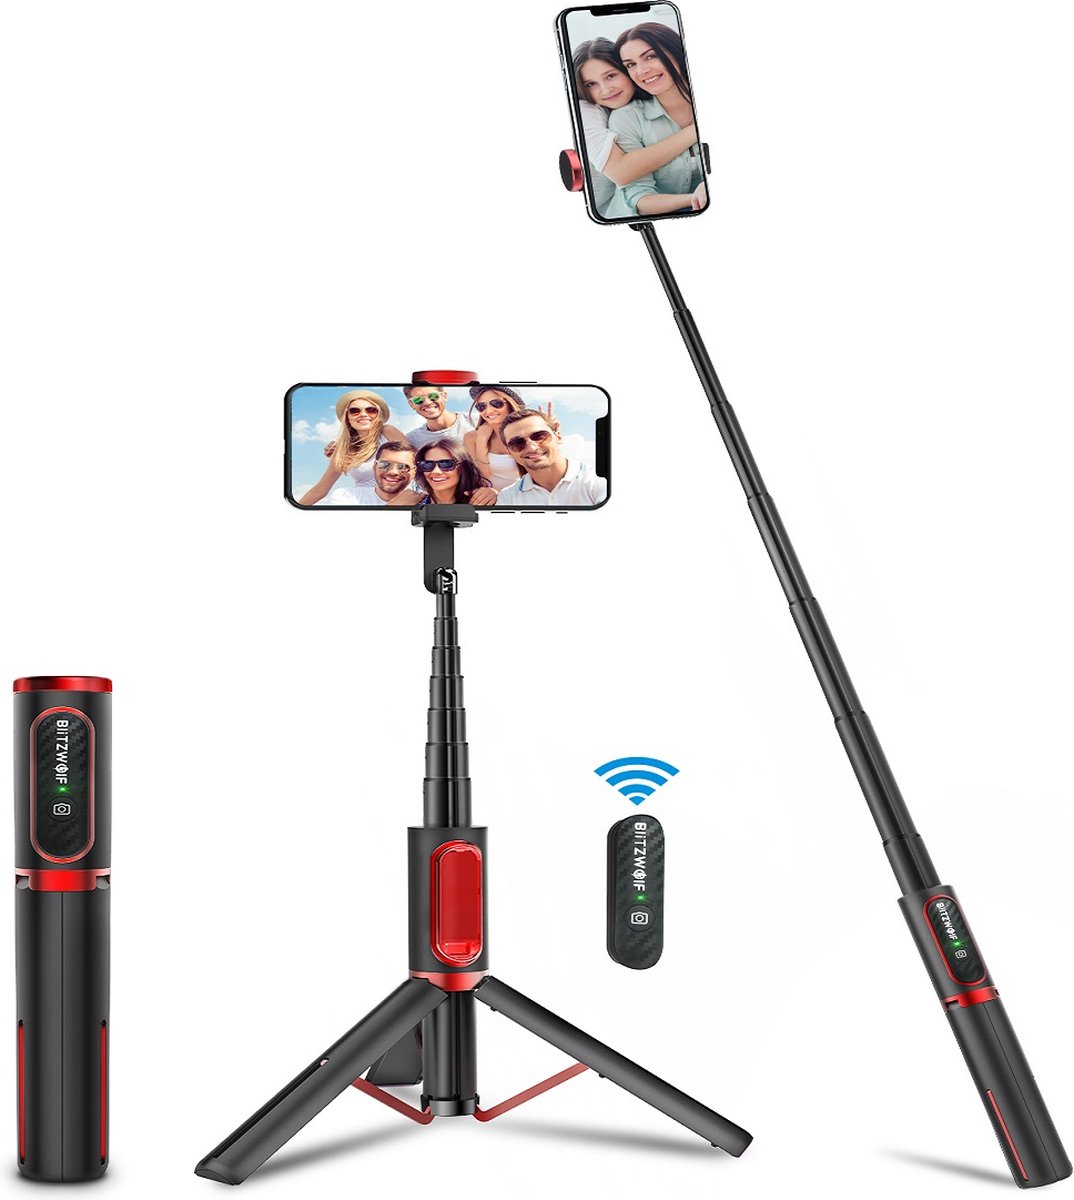 BW-BS10 Draagbare Bluetooth Selfiestick Statief - draaibaar Mini Uitbreidbaar Aluminium Selfie Stick - met intrekbaar statief en afstandsbediening - voor iPhone ve Android